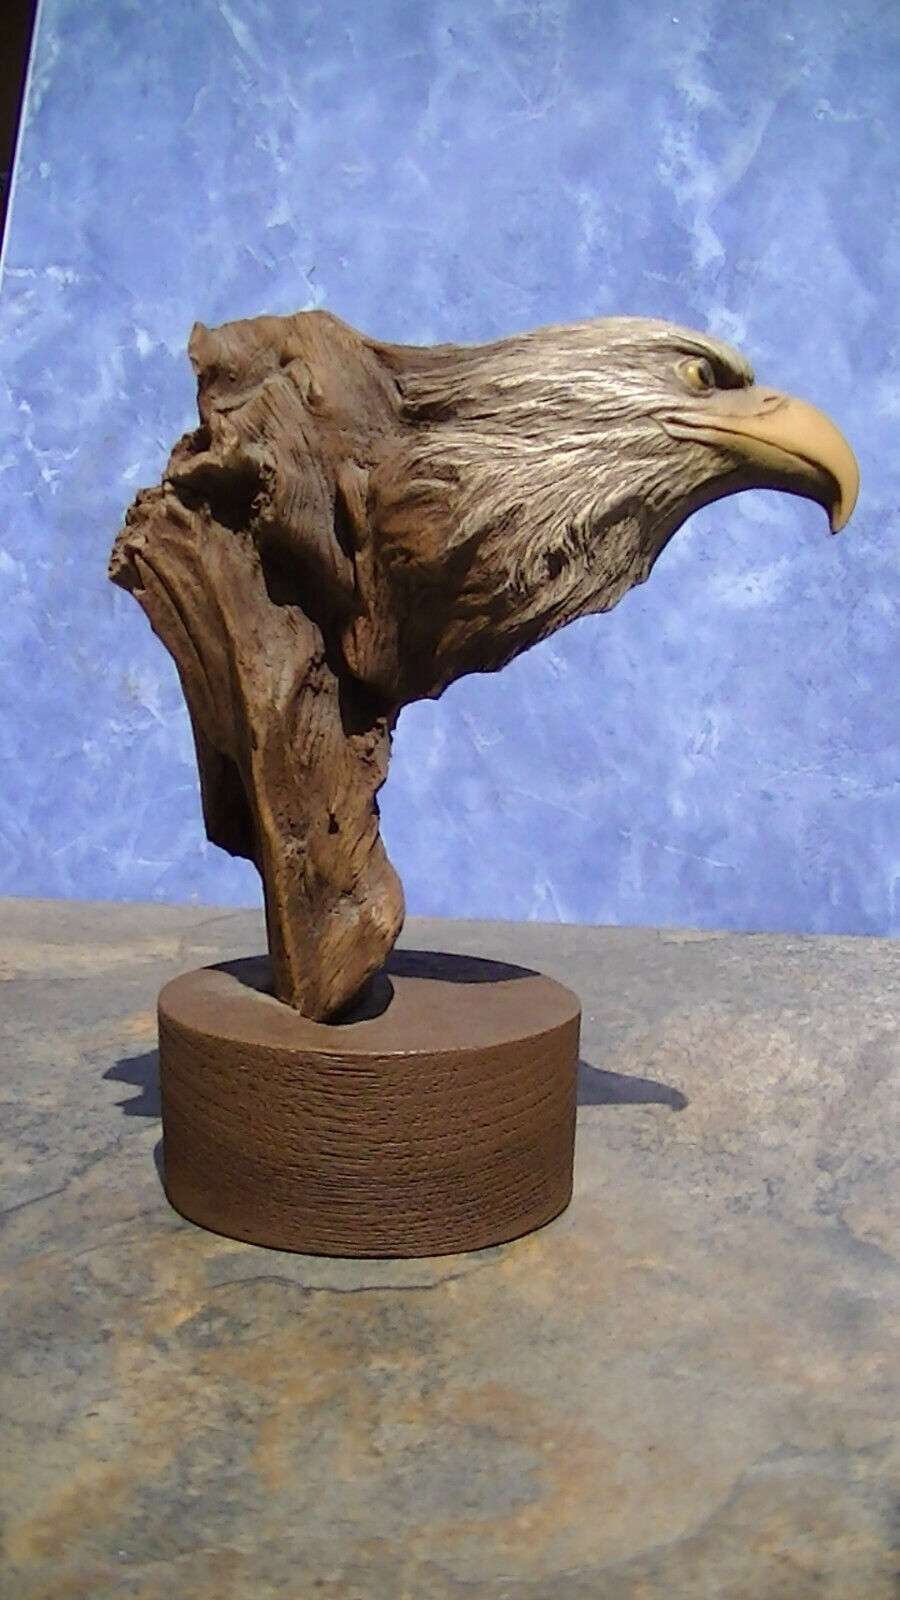 Rick Cain Wood Flight Eagle Sculpture - 583 of 2000 7\